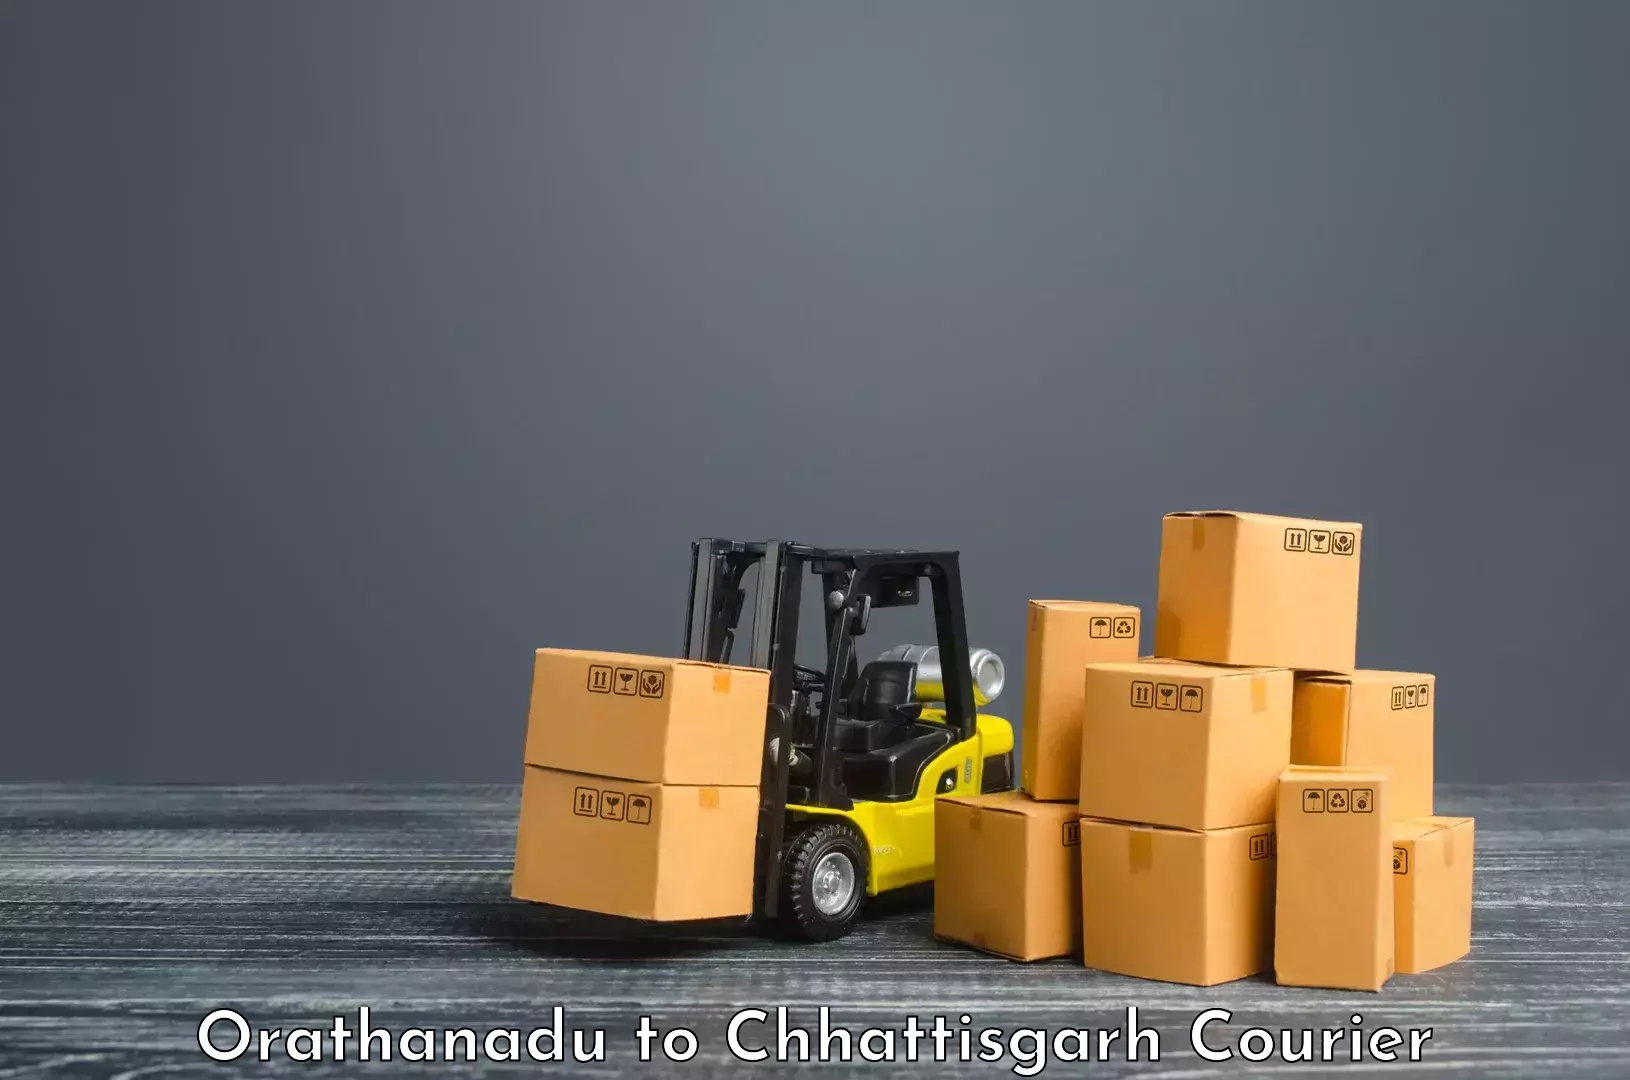 High-speed parcel service Orathanadu to Patna Chhattisgarh